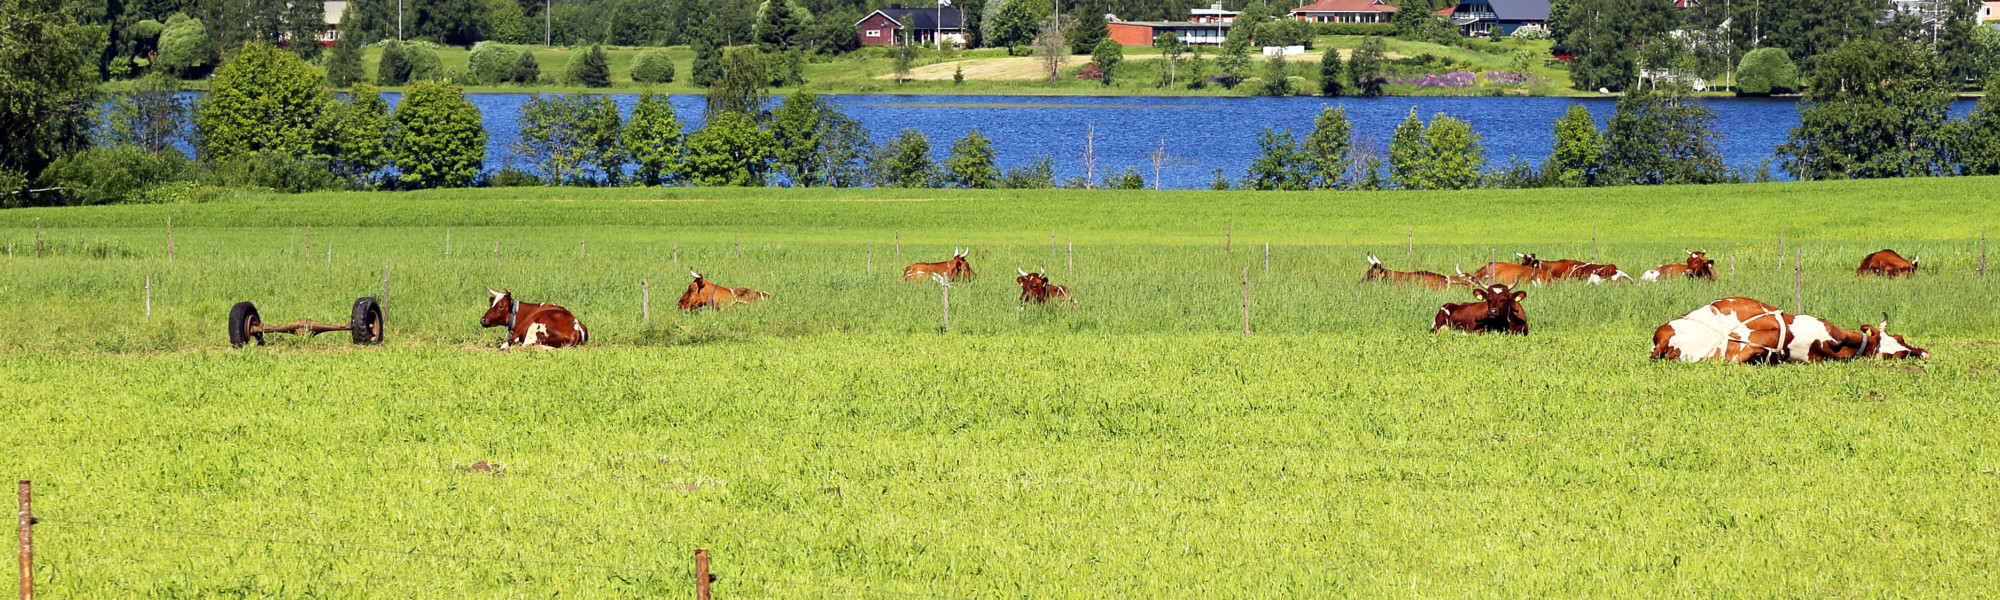 suomalainen maaseutumaisema, jossa lehmiä pellolla